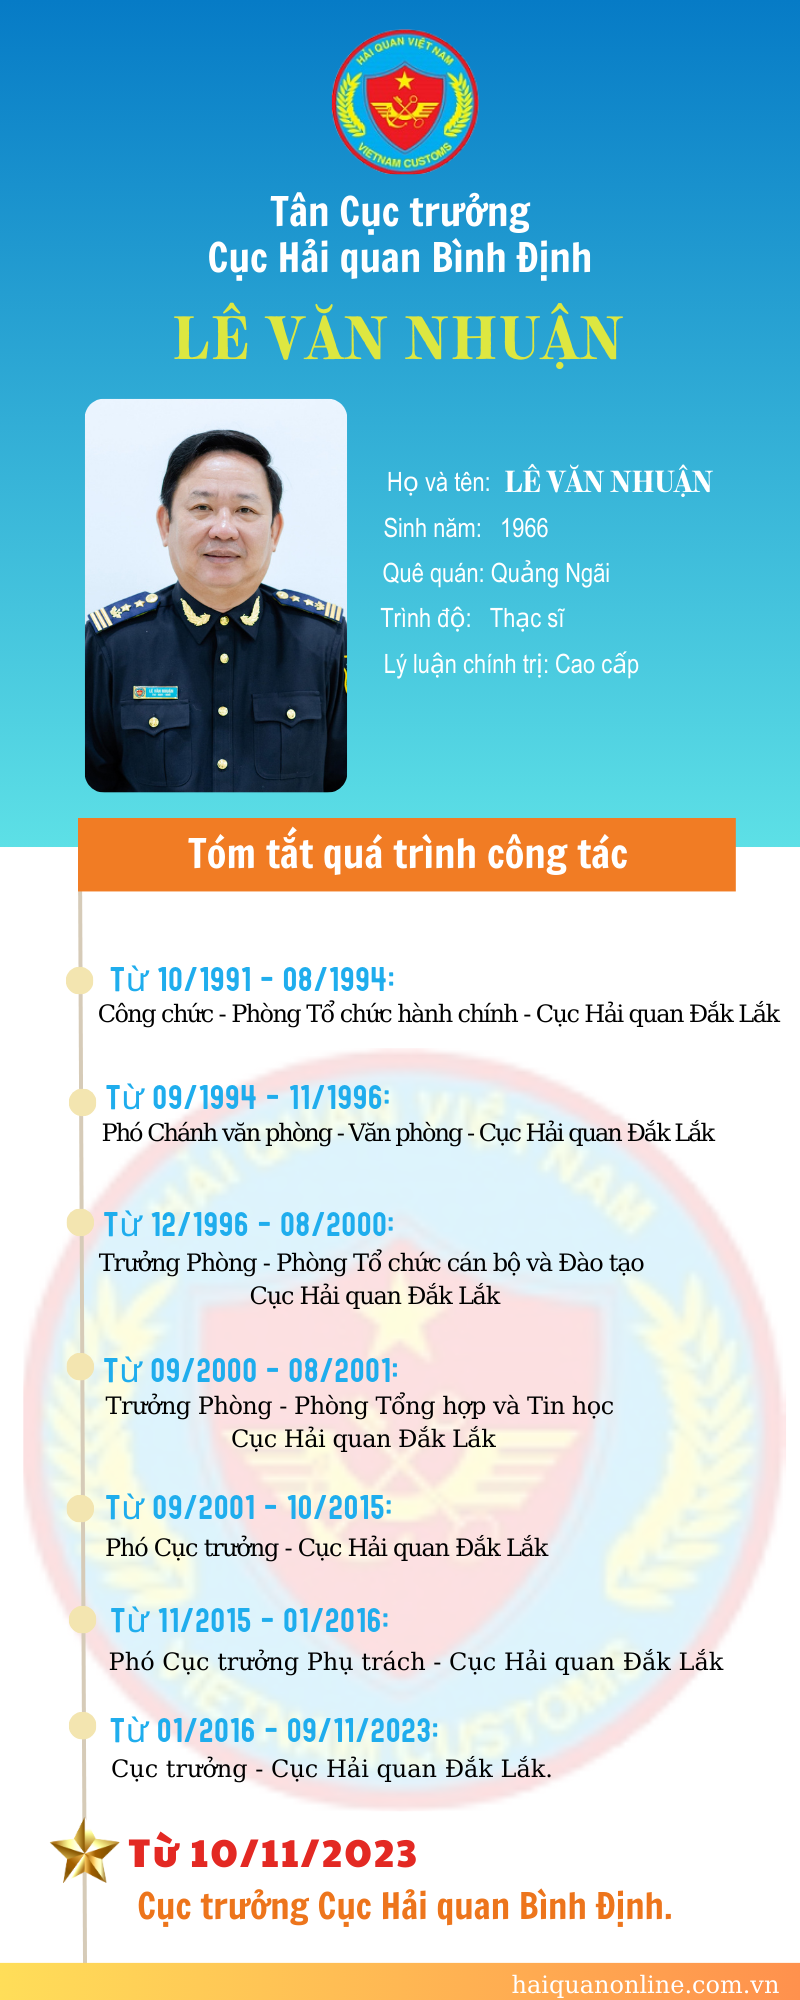 Inforgraphic: Quá trình công tác của tân Cục trưởng Cục Hải quan Bình Định Lê Văn Nhuận